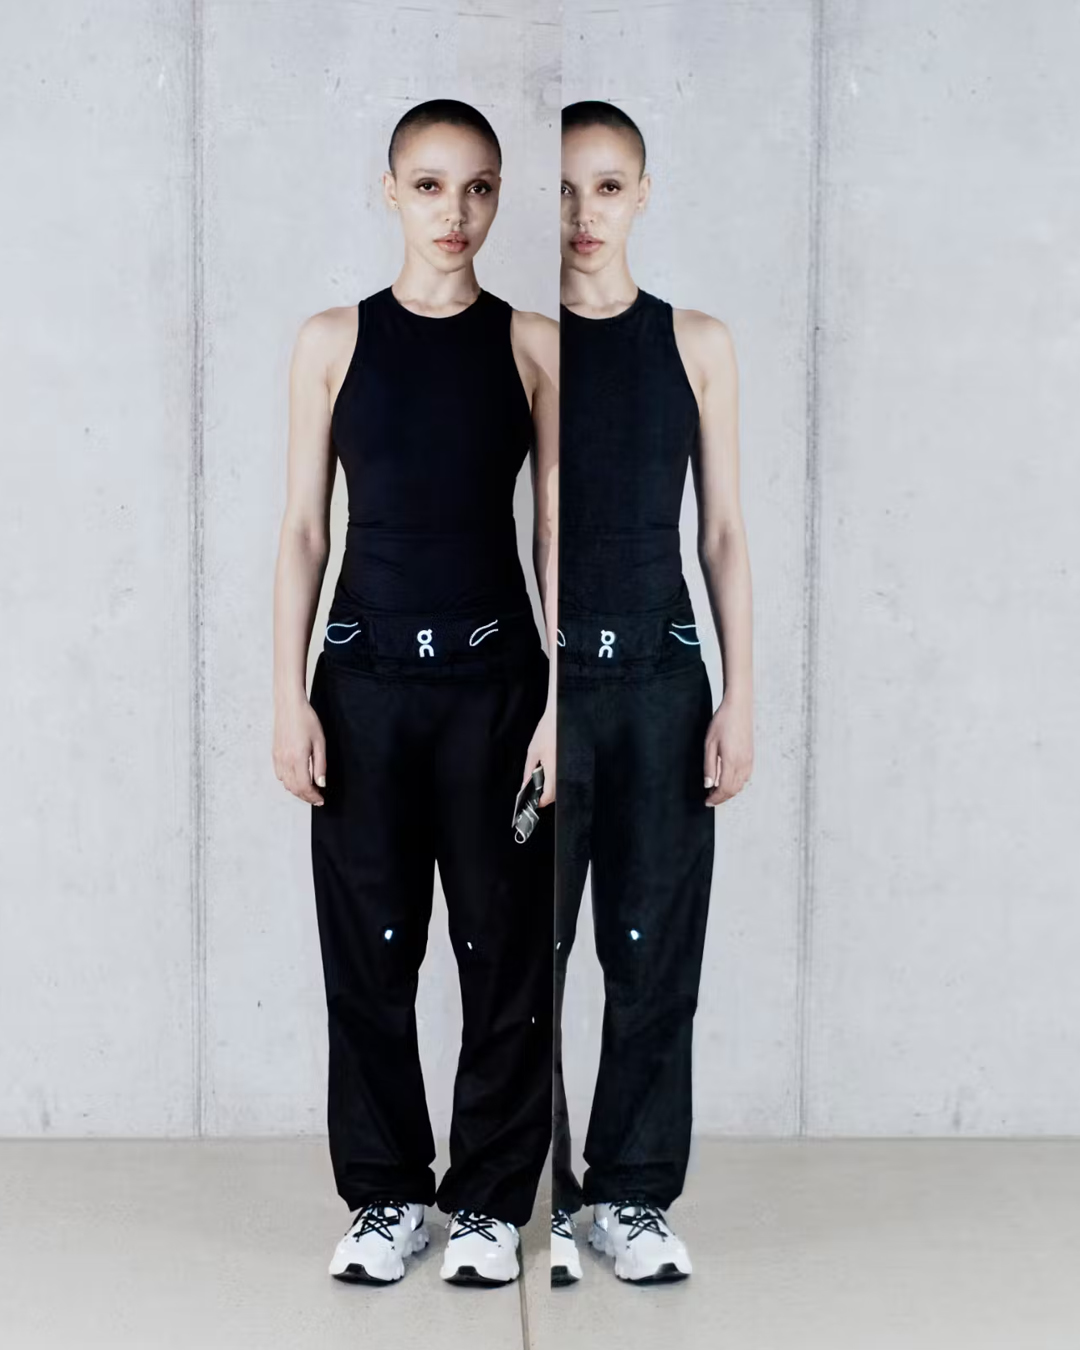 FKA Twigs Partners with On for Fashion-Forward Performancewear